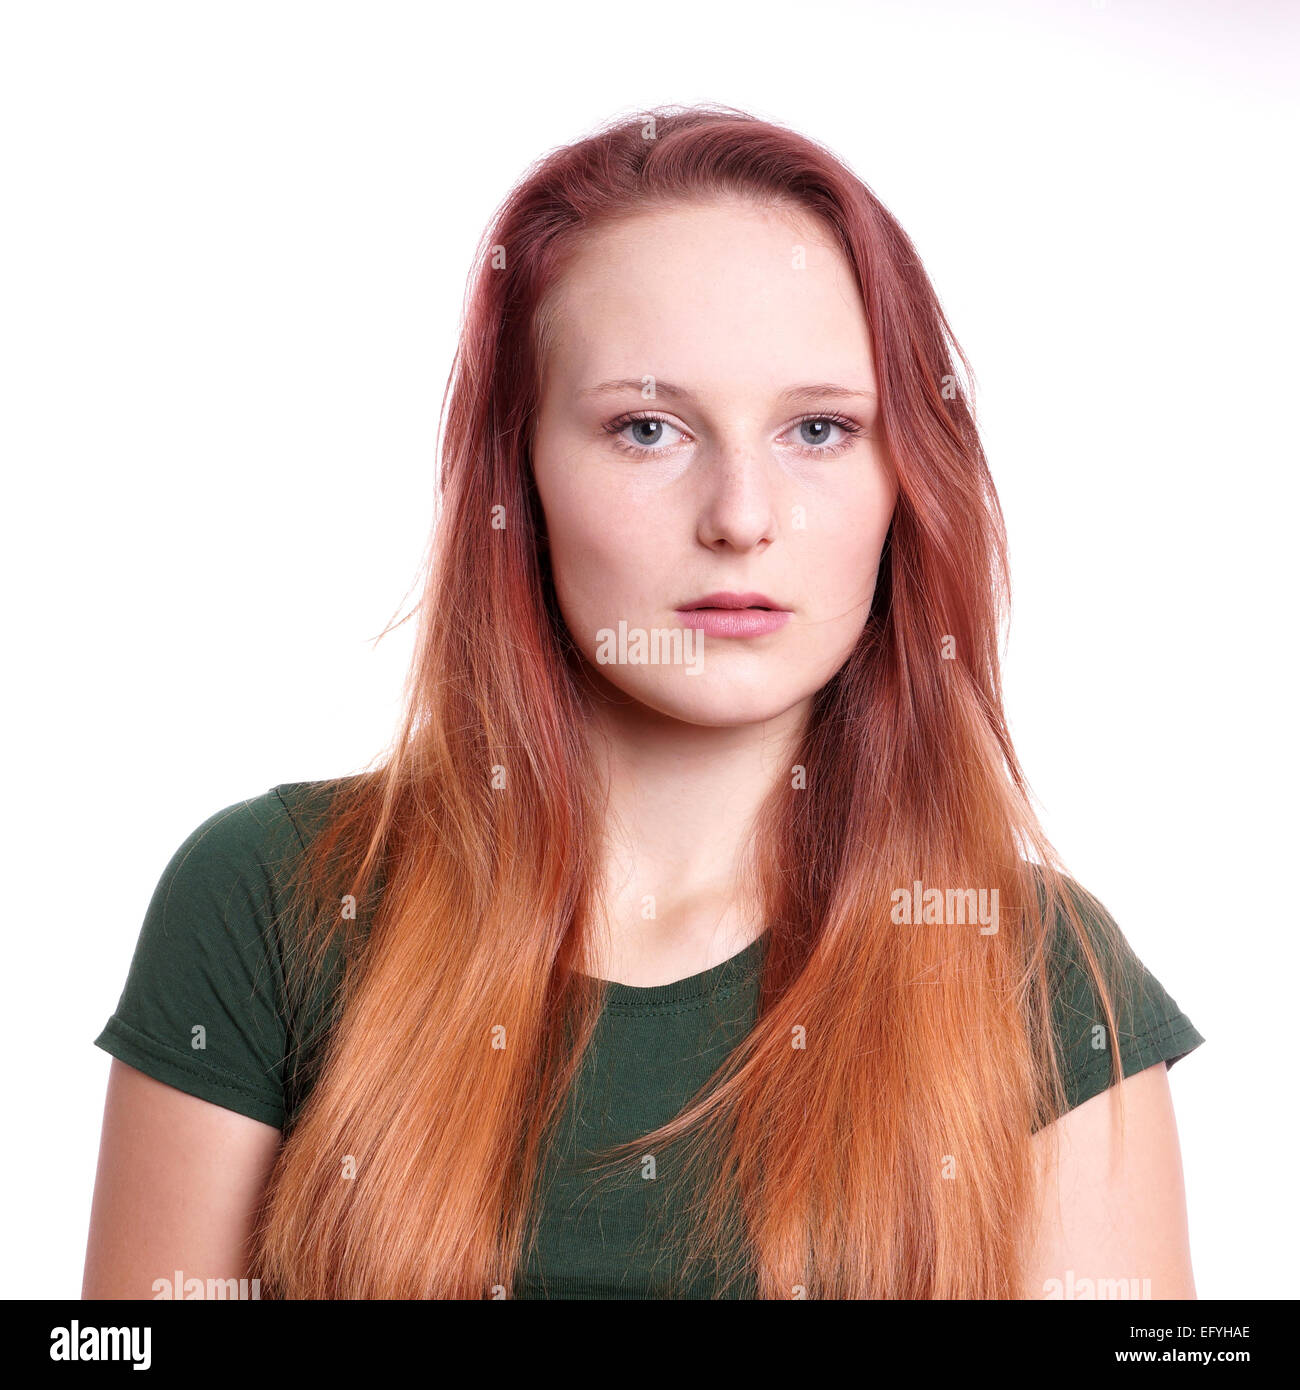 Retrato de una mujer joven con expresión neutra Foto de stock